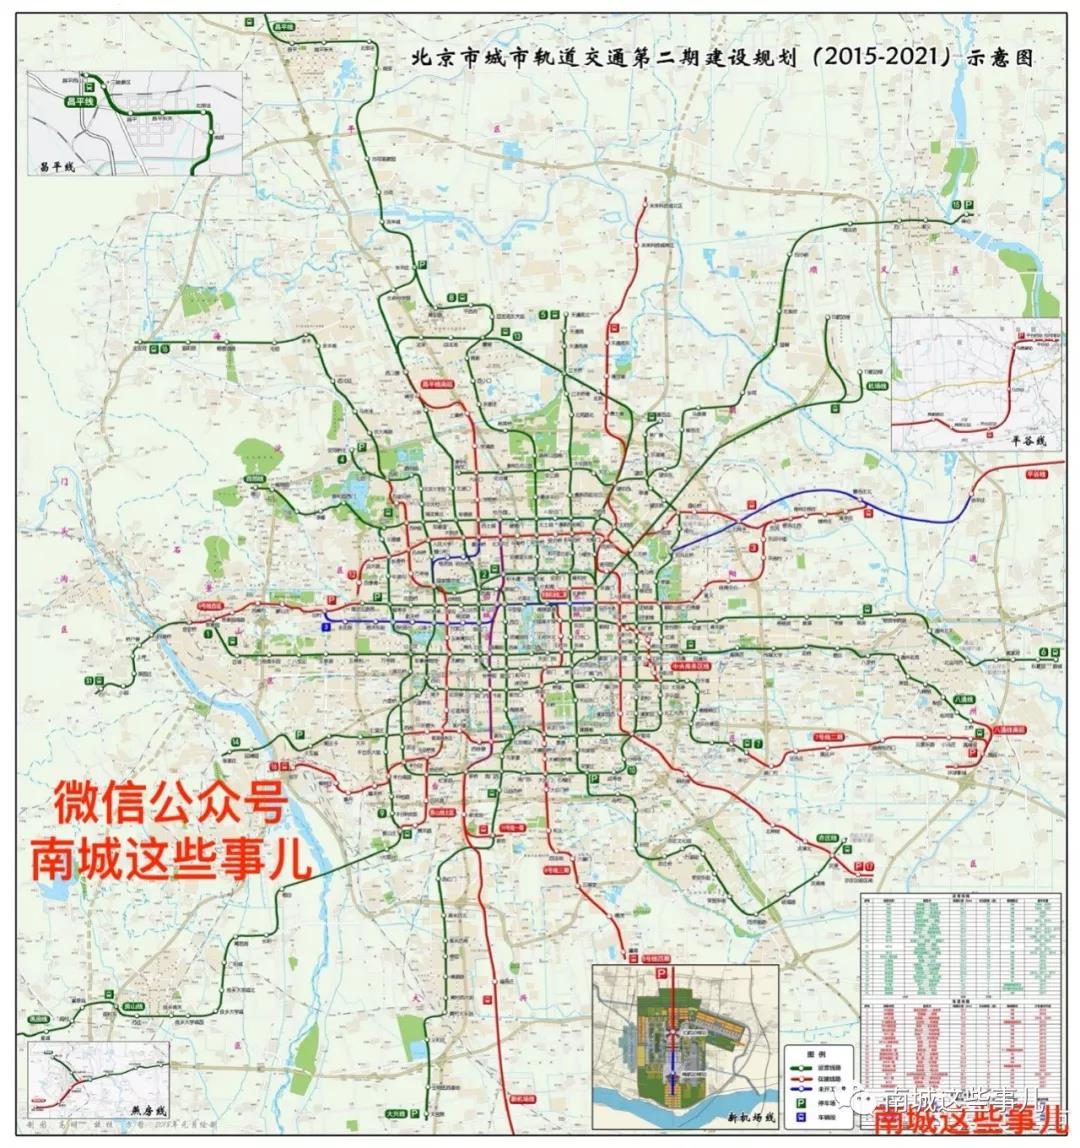 北京真实比例地铁图 - 哔哩哔哩